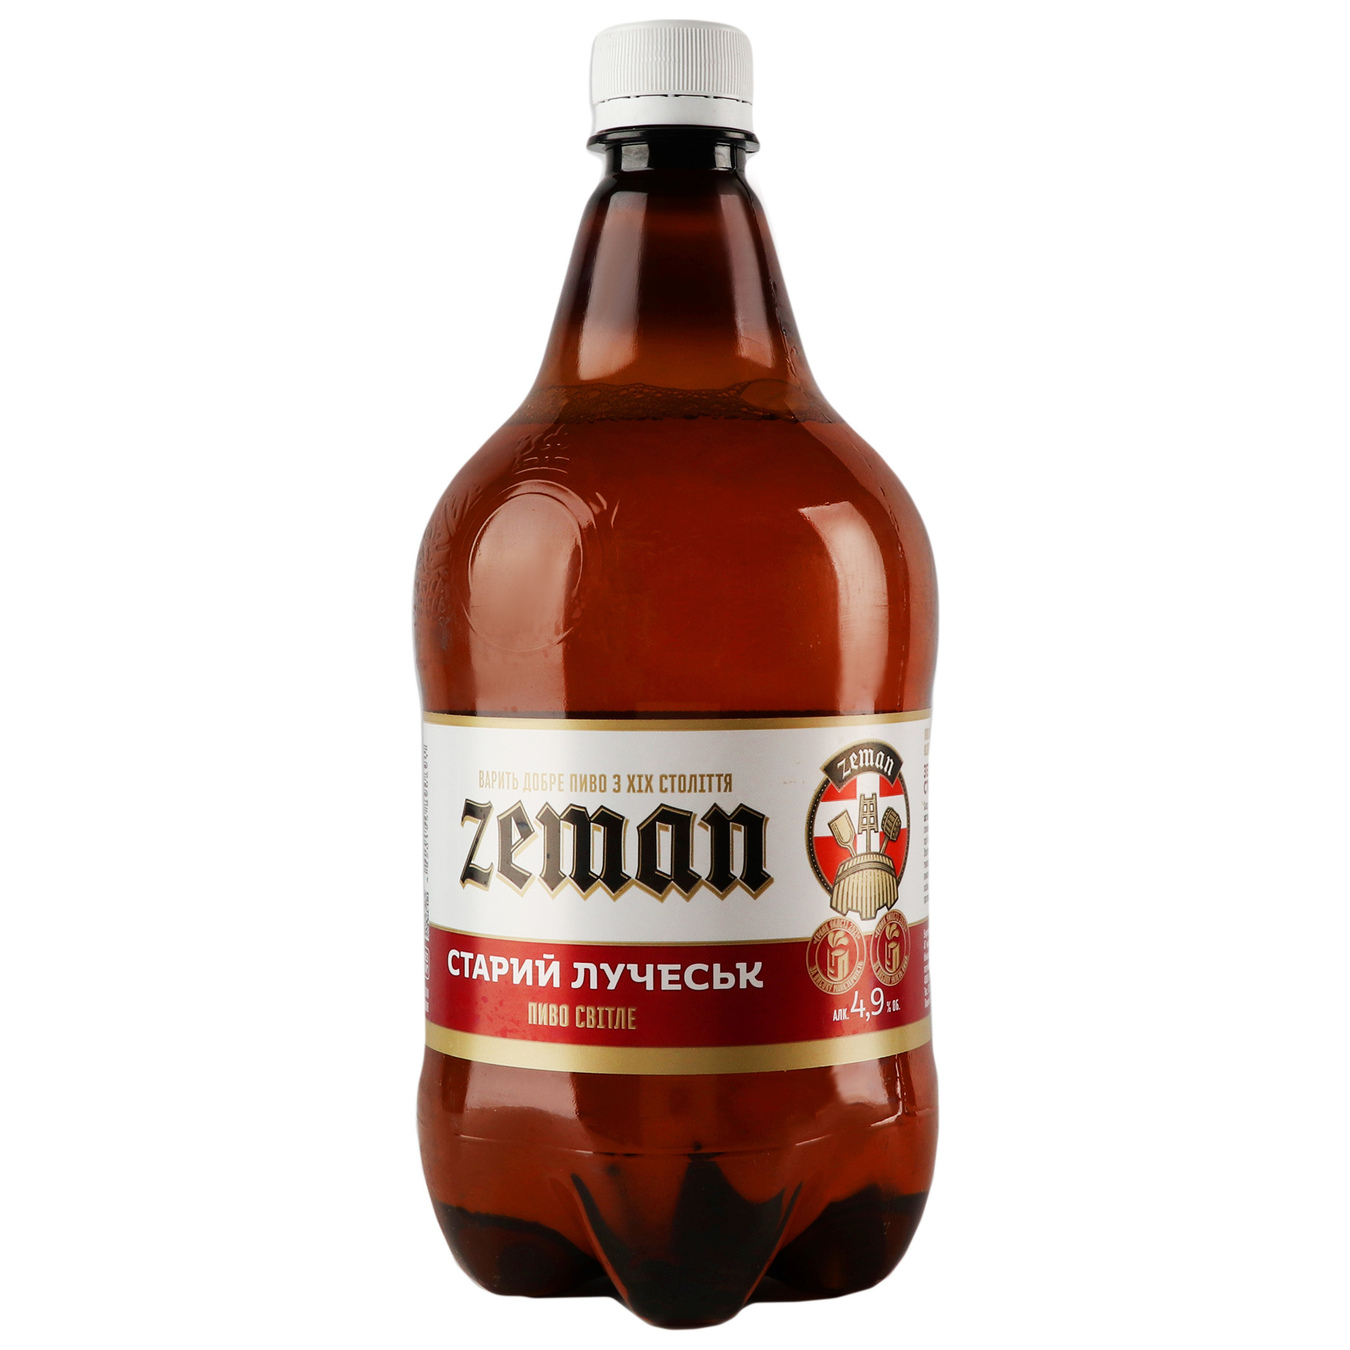 Пиво светлое Земан Старый Луческ 4,9% 1л пластиковая бутылка